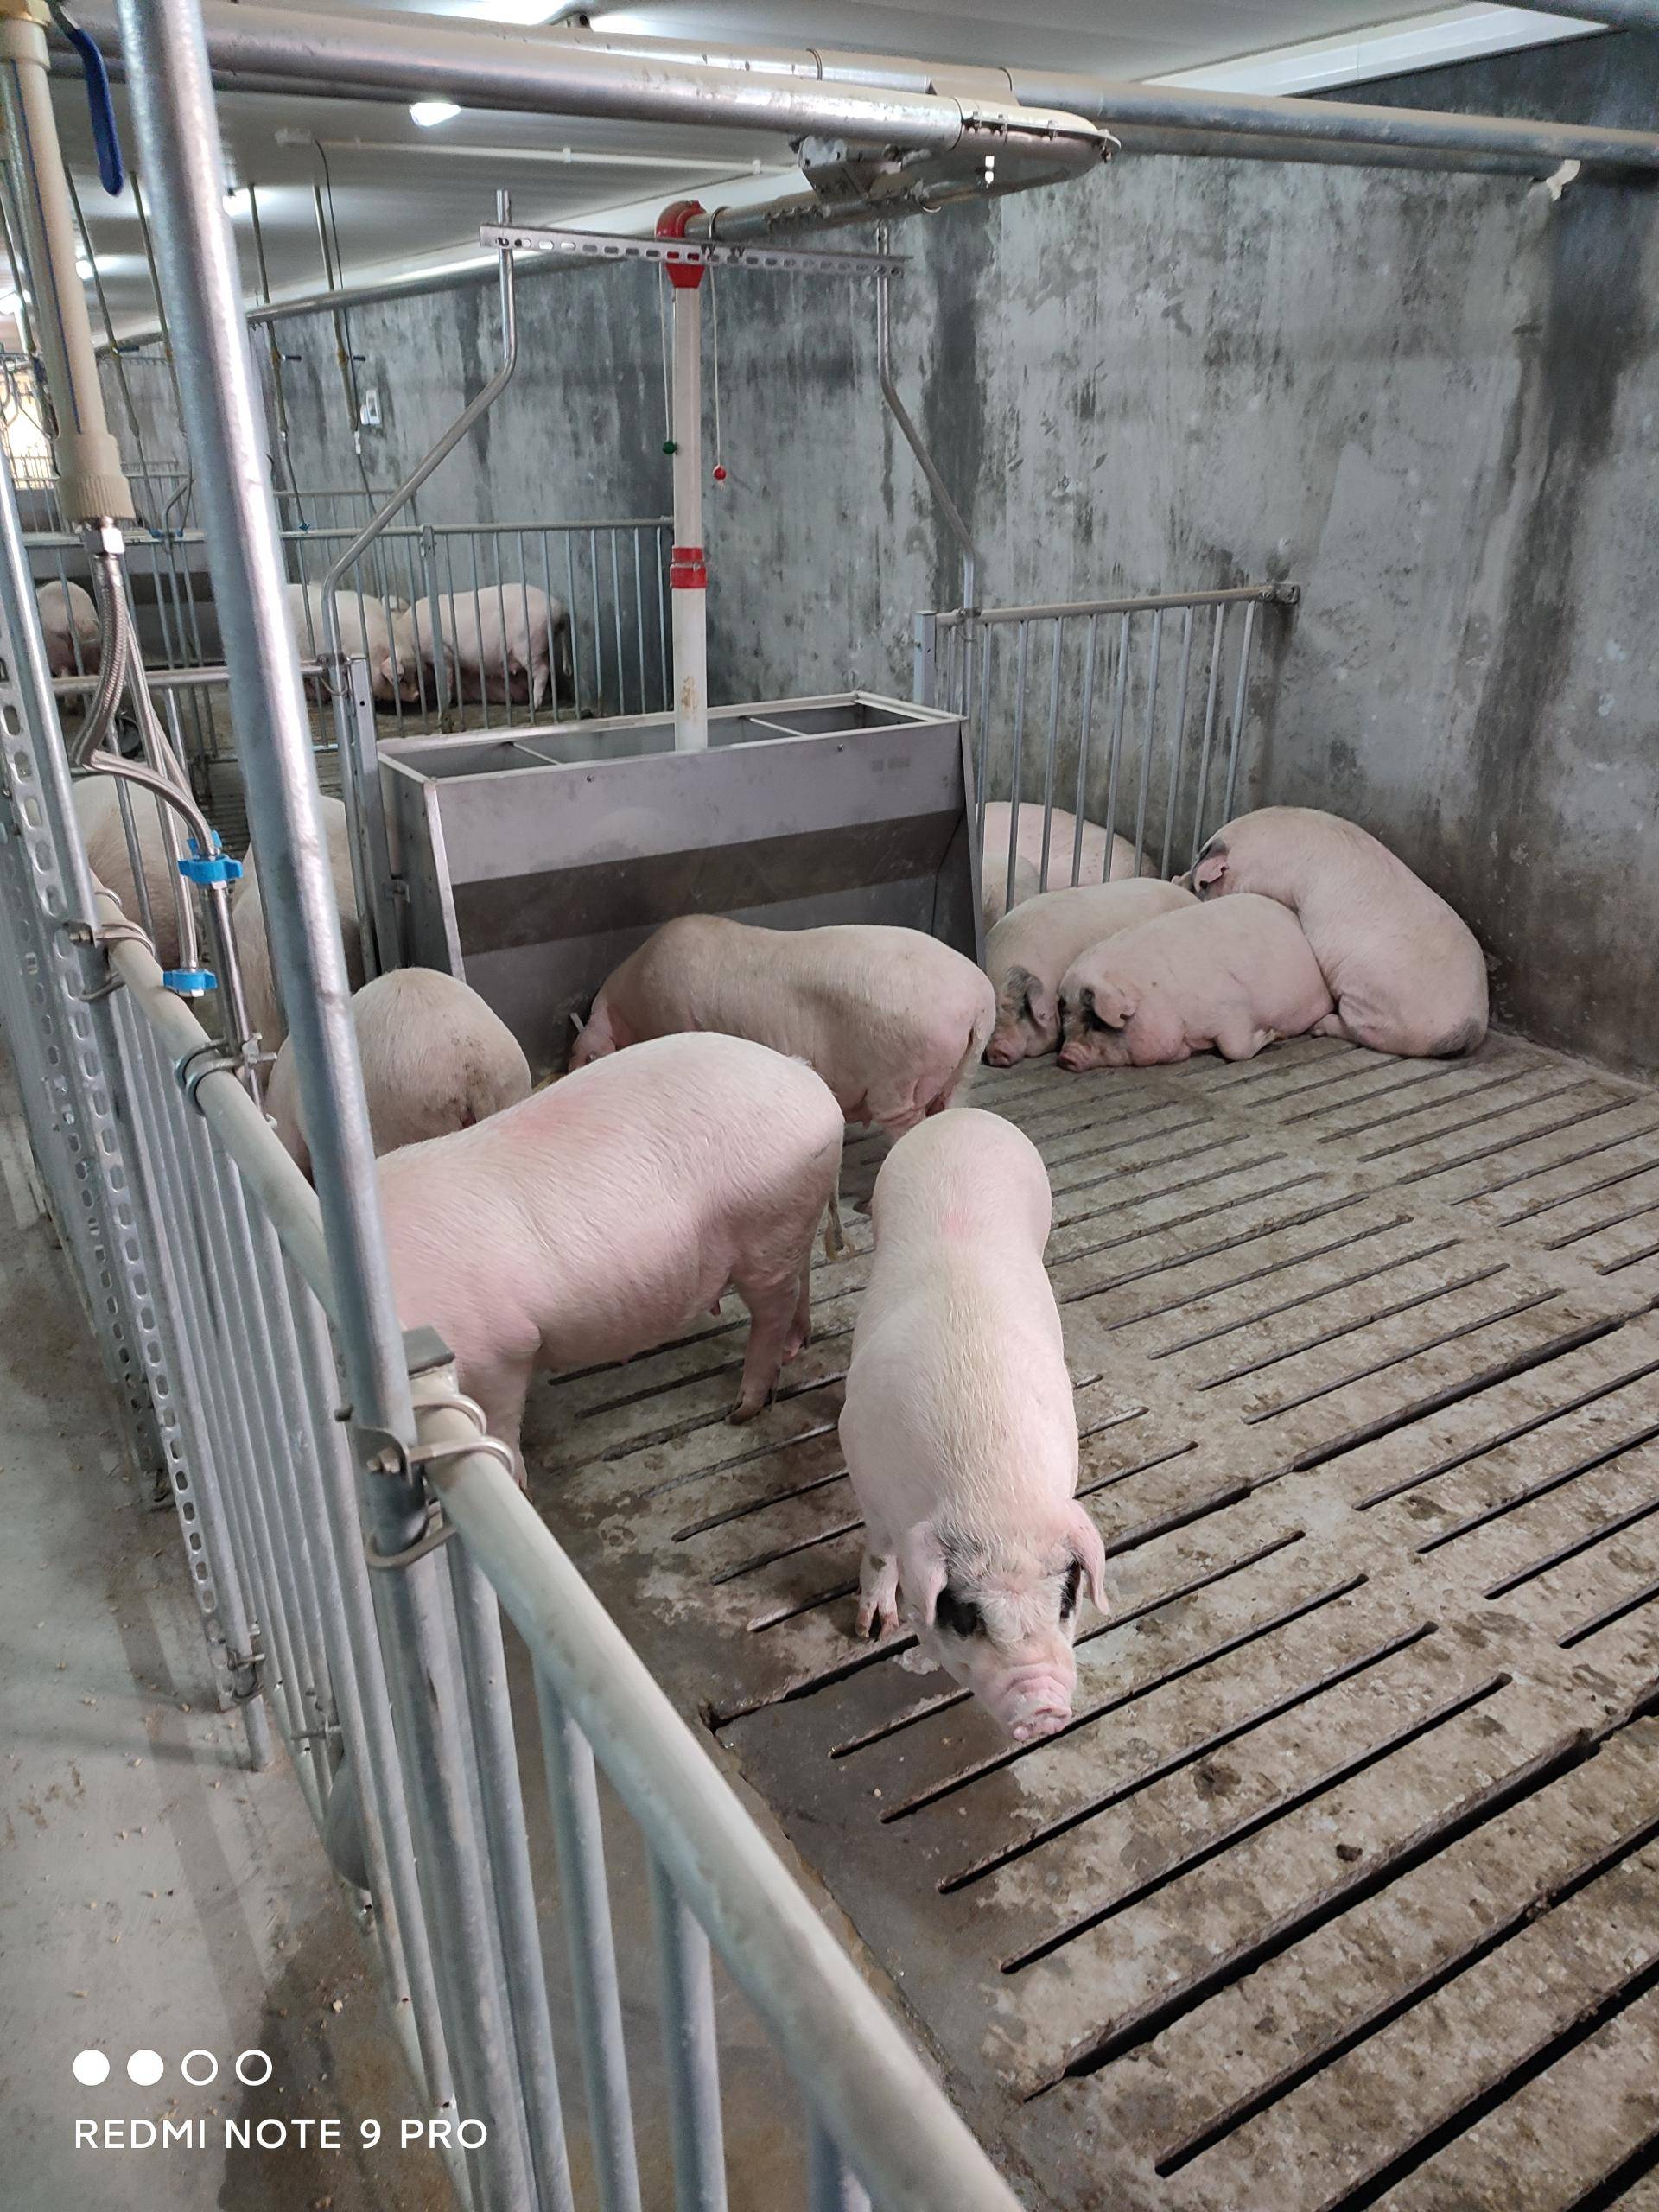 农村小型养猪场如何设计?最低成本,科学养猪简易猪栏猪舍